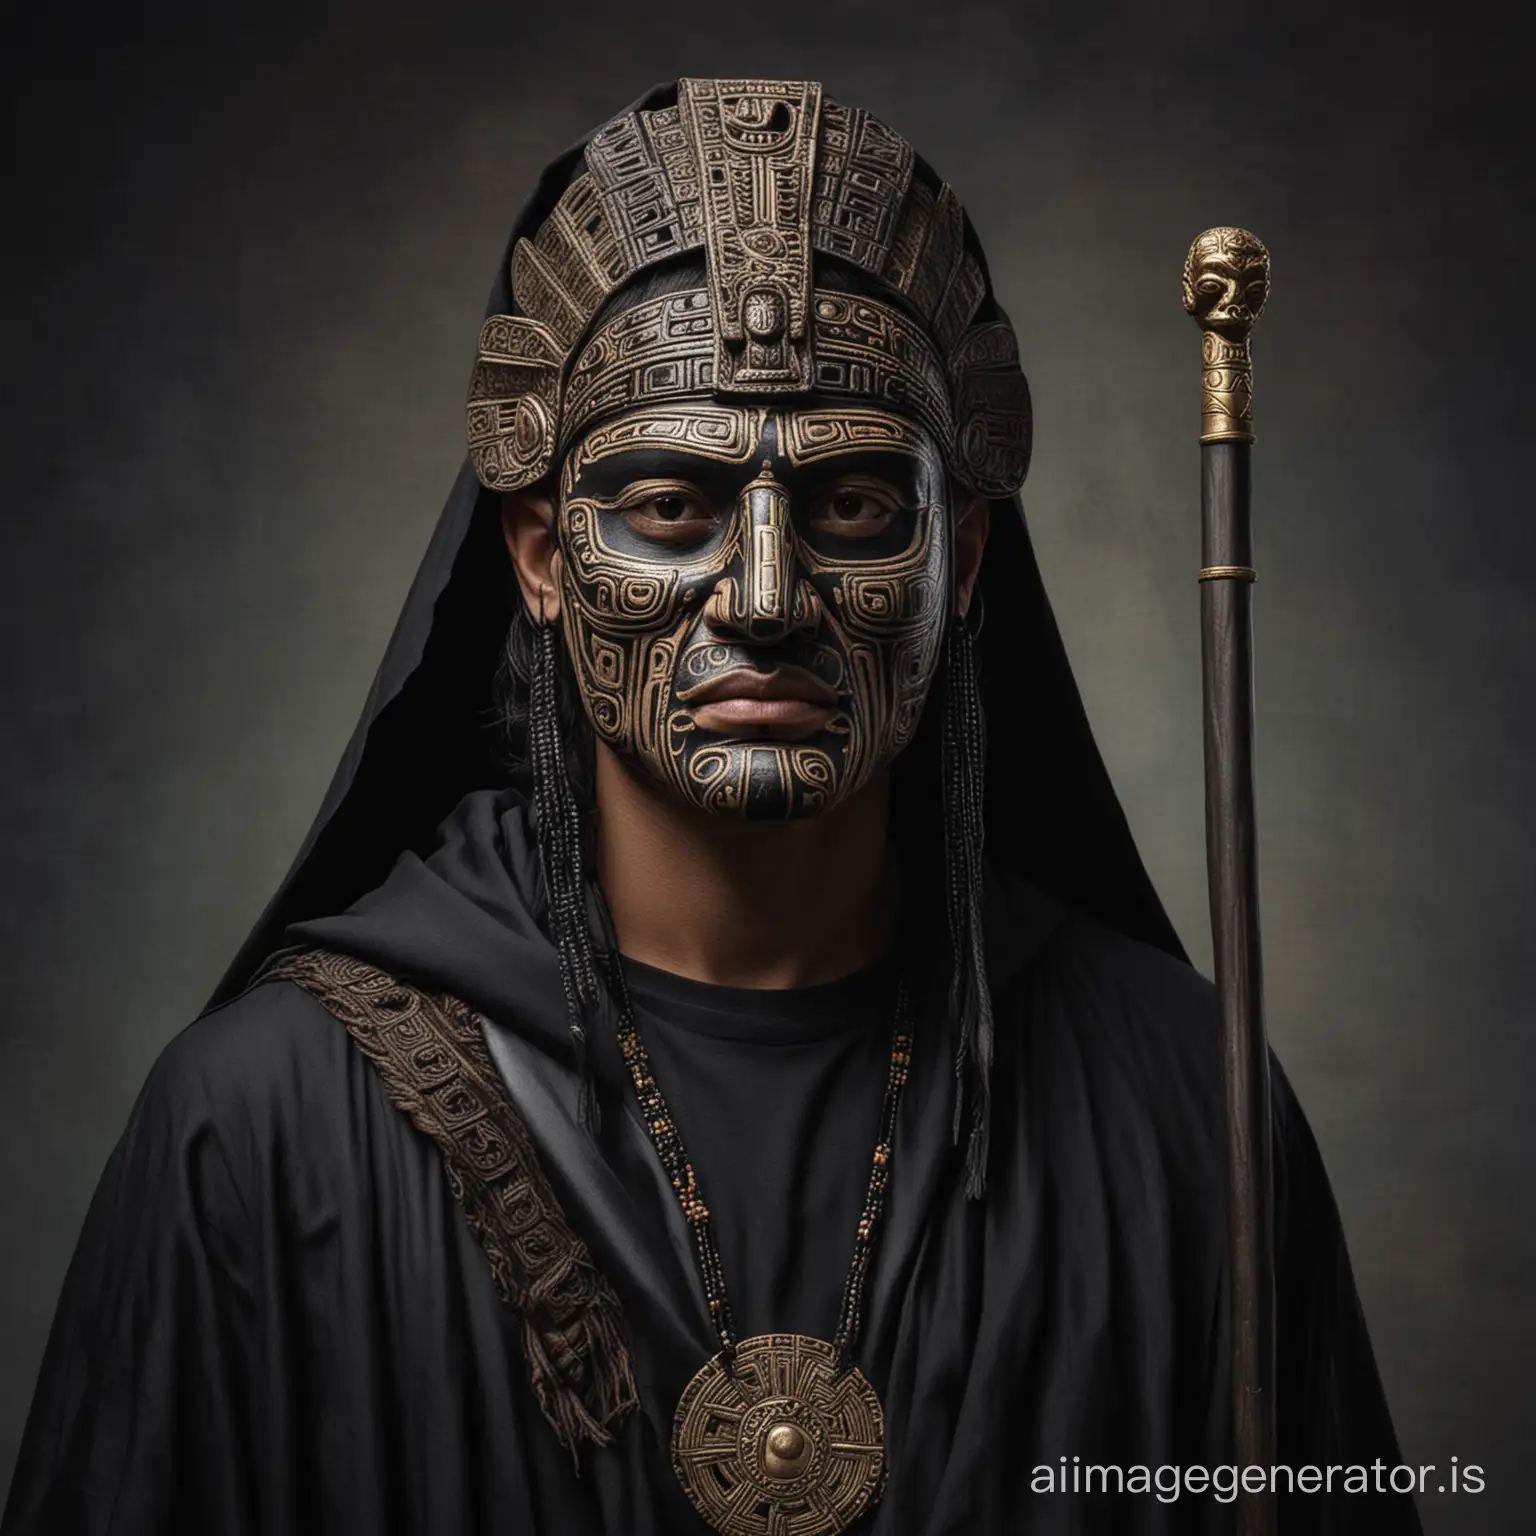  Человек ,чёрная мантия, трость, маска майя